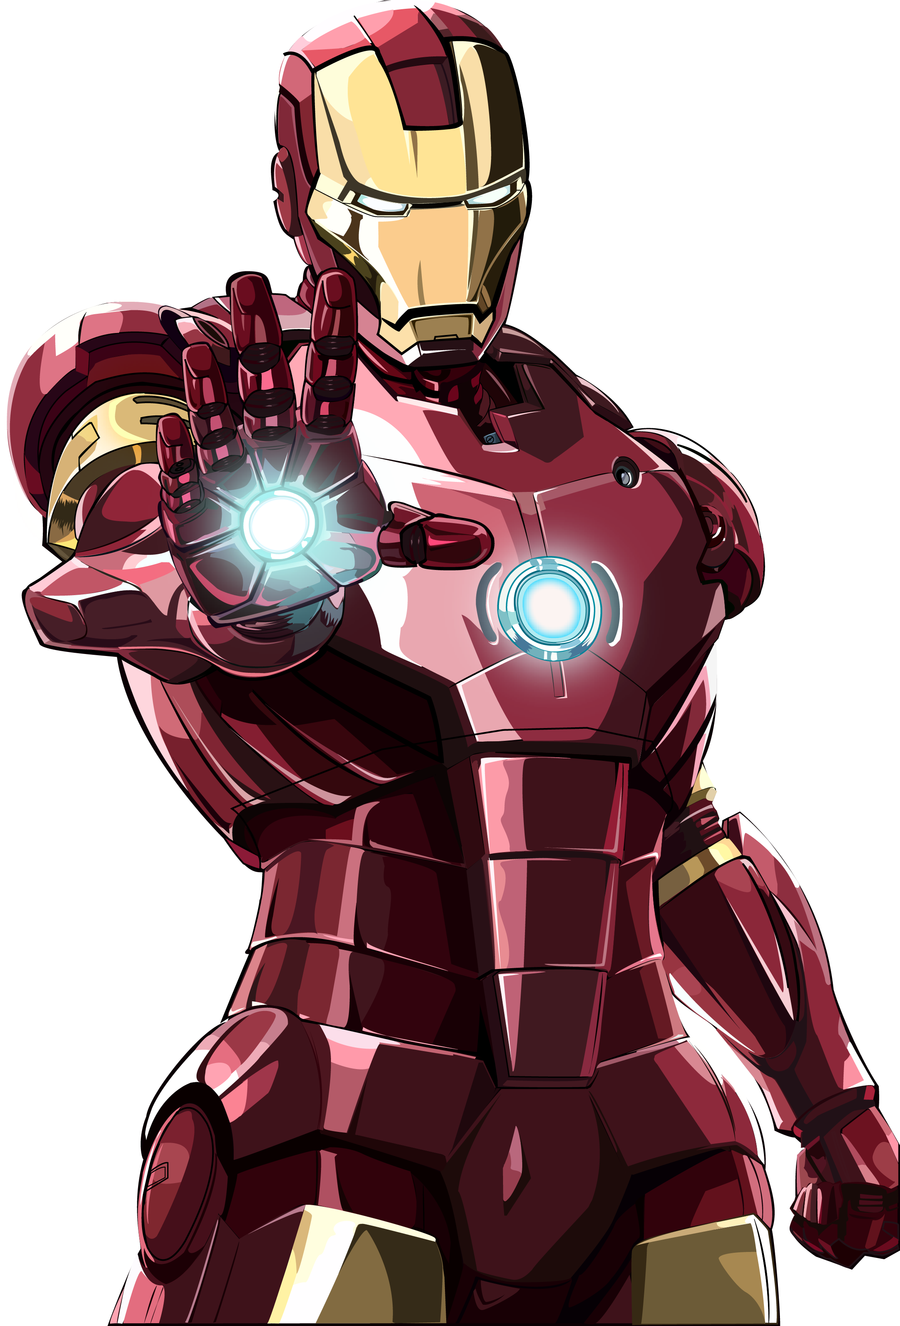 iron man vector. Iron man, Iron man avengers, Iron man cartoon